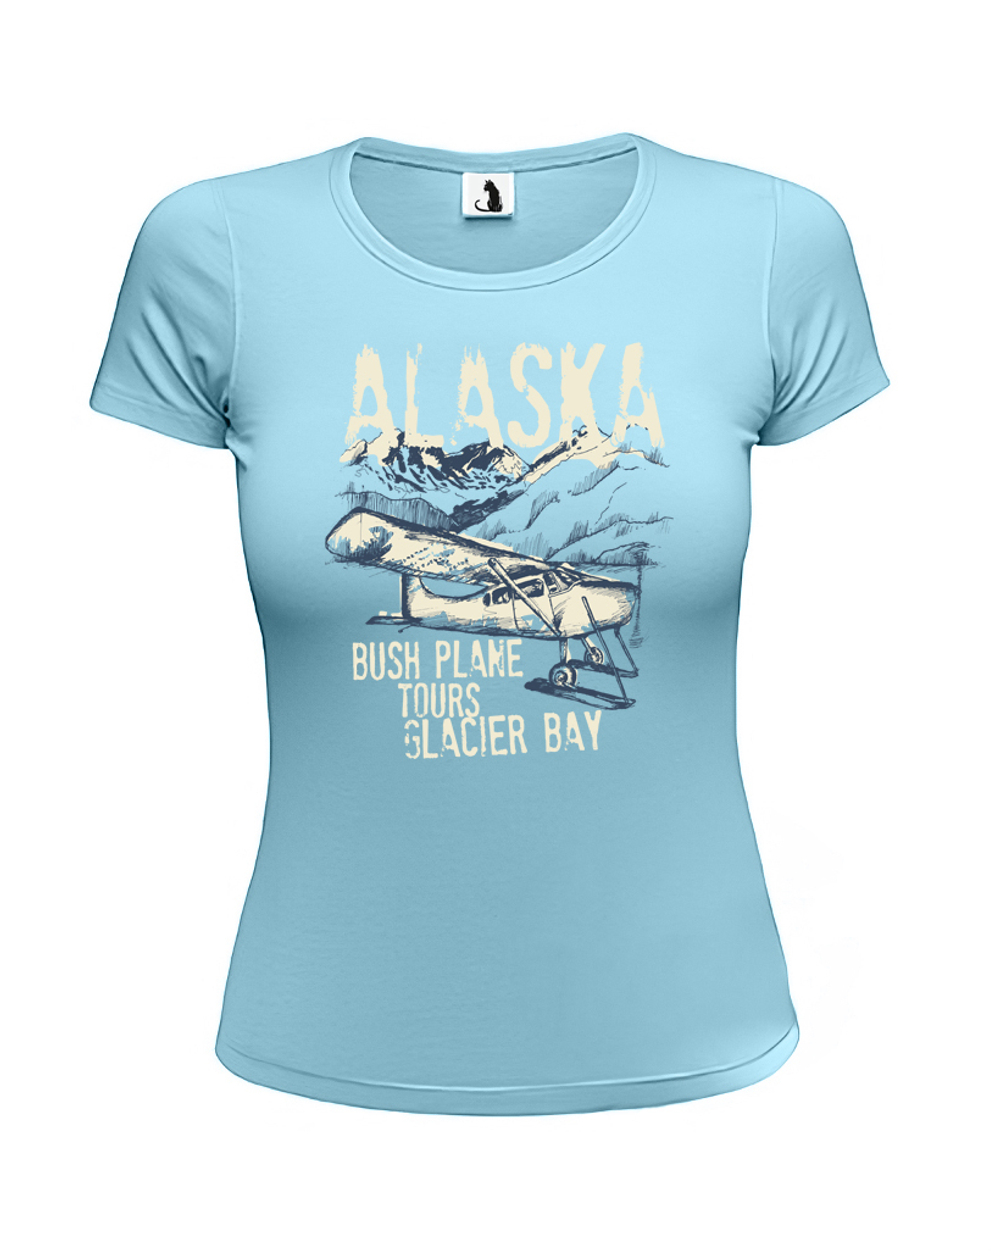 Футболка с самолетом Alaska Glacier bay женская приталенная голубая